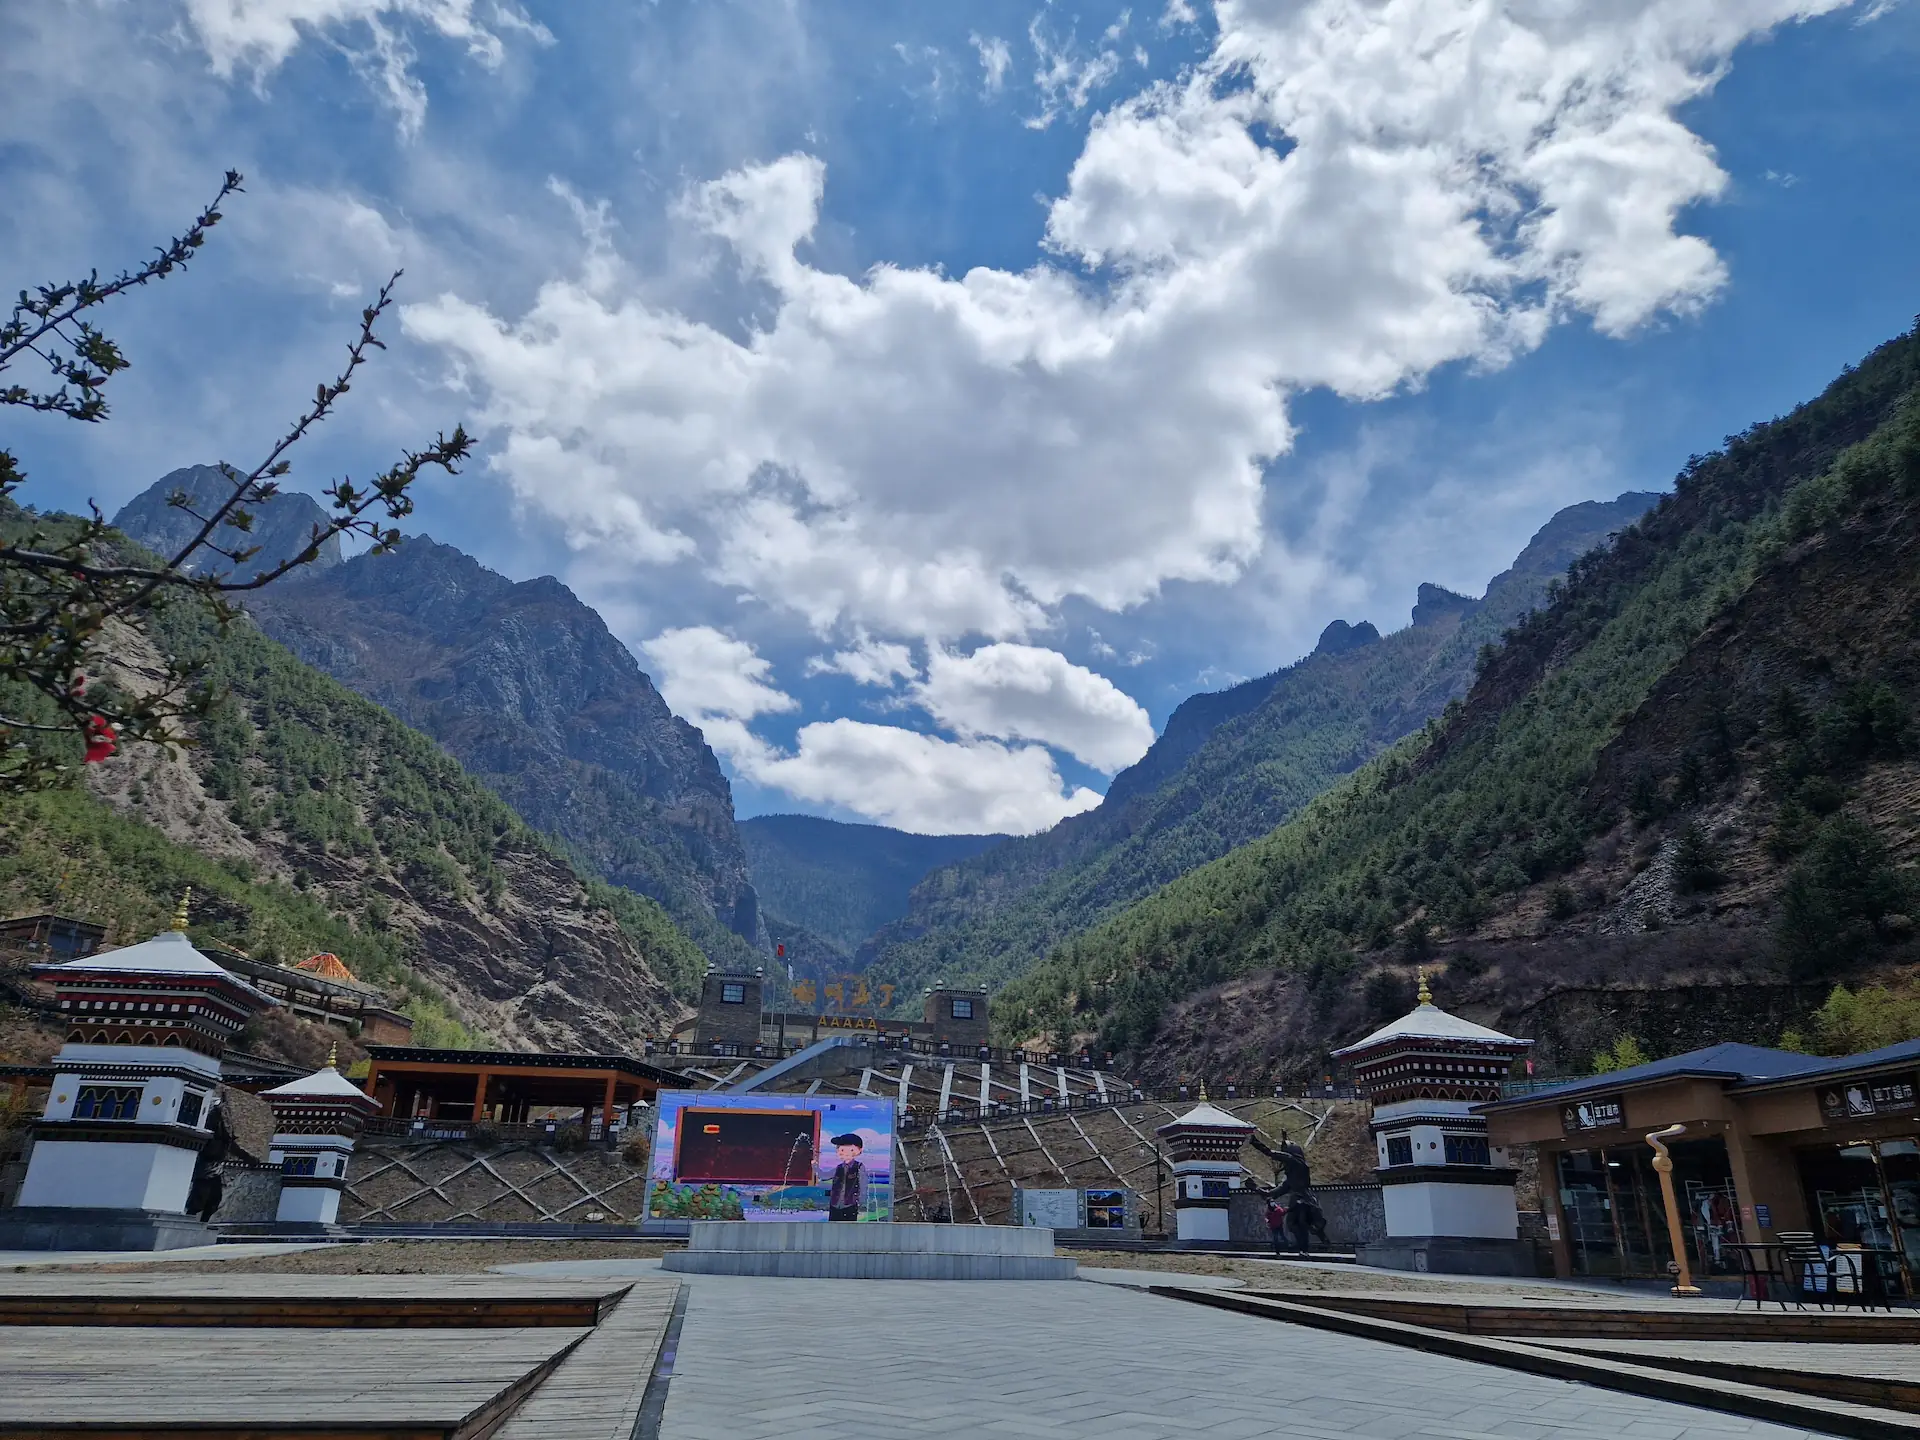 L'entrée de la réserve naturelle de Yading : une grande place bétonnée au pied d'une vallée, avec des magasins de souvenirs et un grand portail avec cinq A (AAAAA), le plus haut niveau du classement des attractions touristiques en Chine